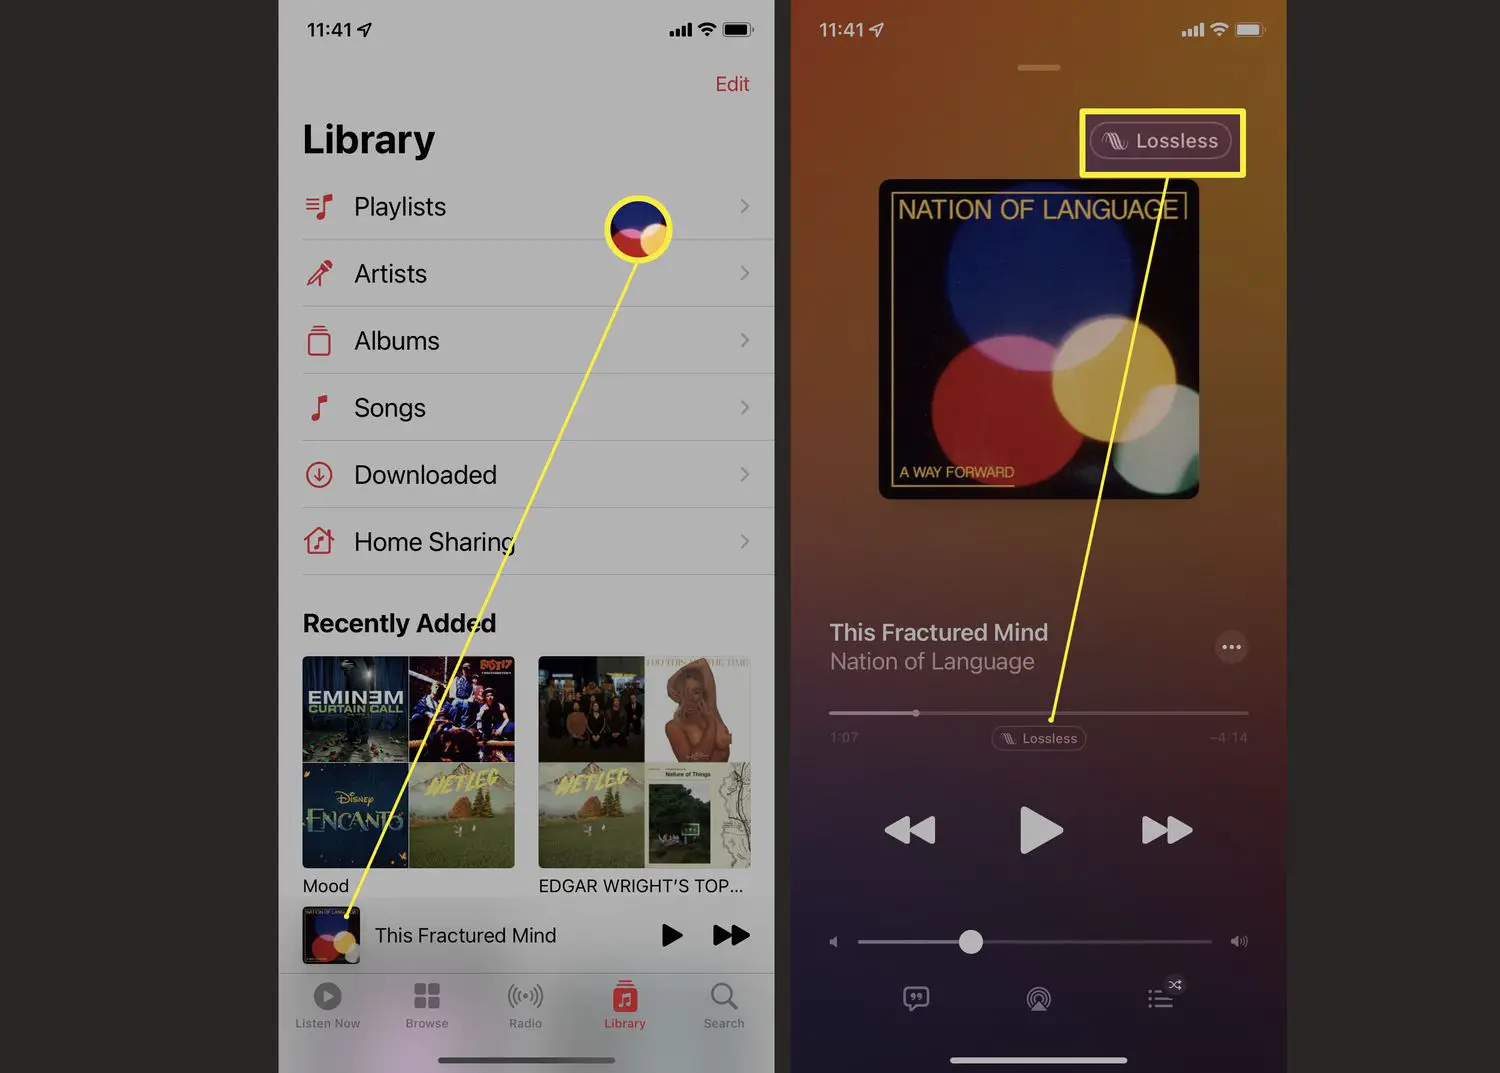 Etapas necessárias para visualizar detalhes sobre uma música no aplicativo Apple Music.